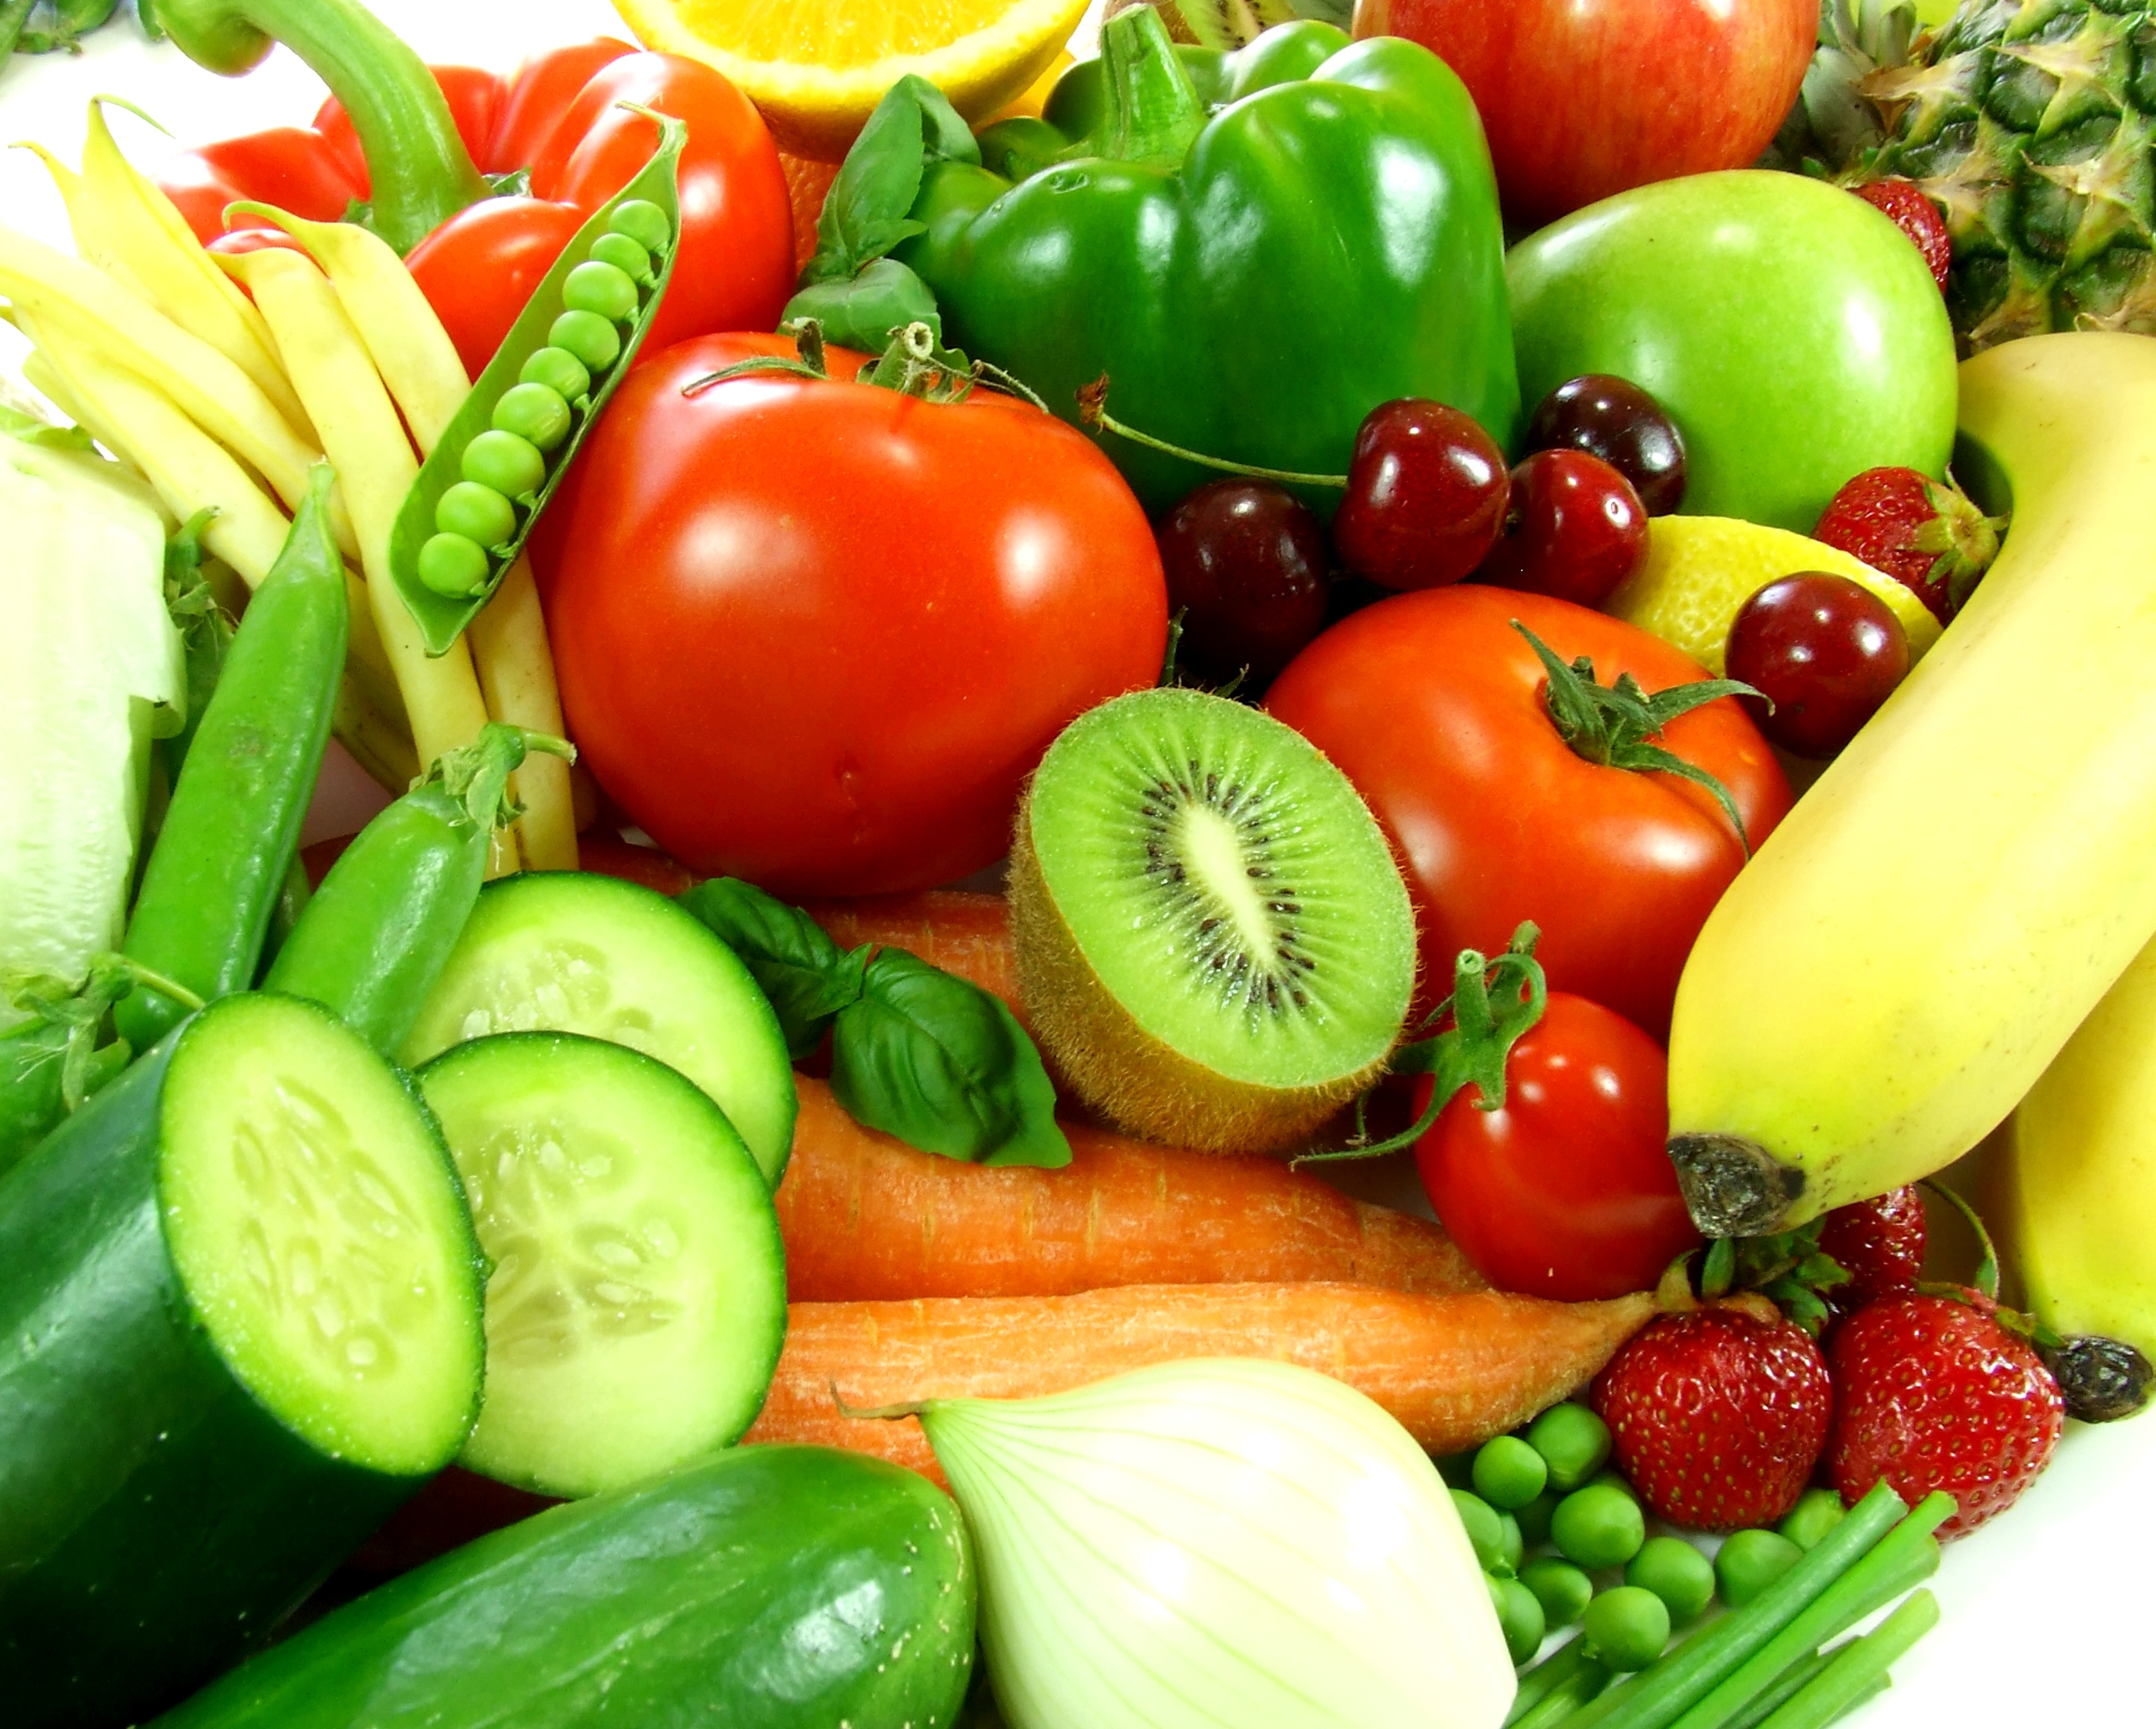 Fruits & Vegetables #9